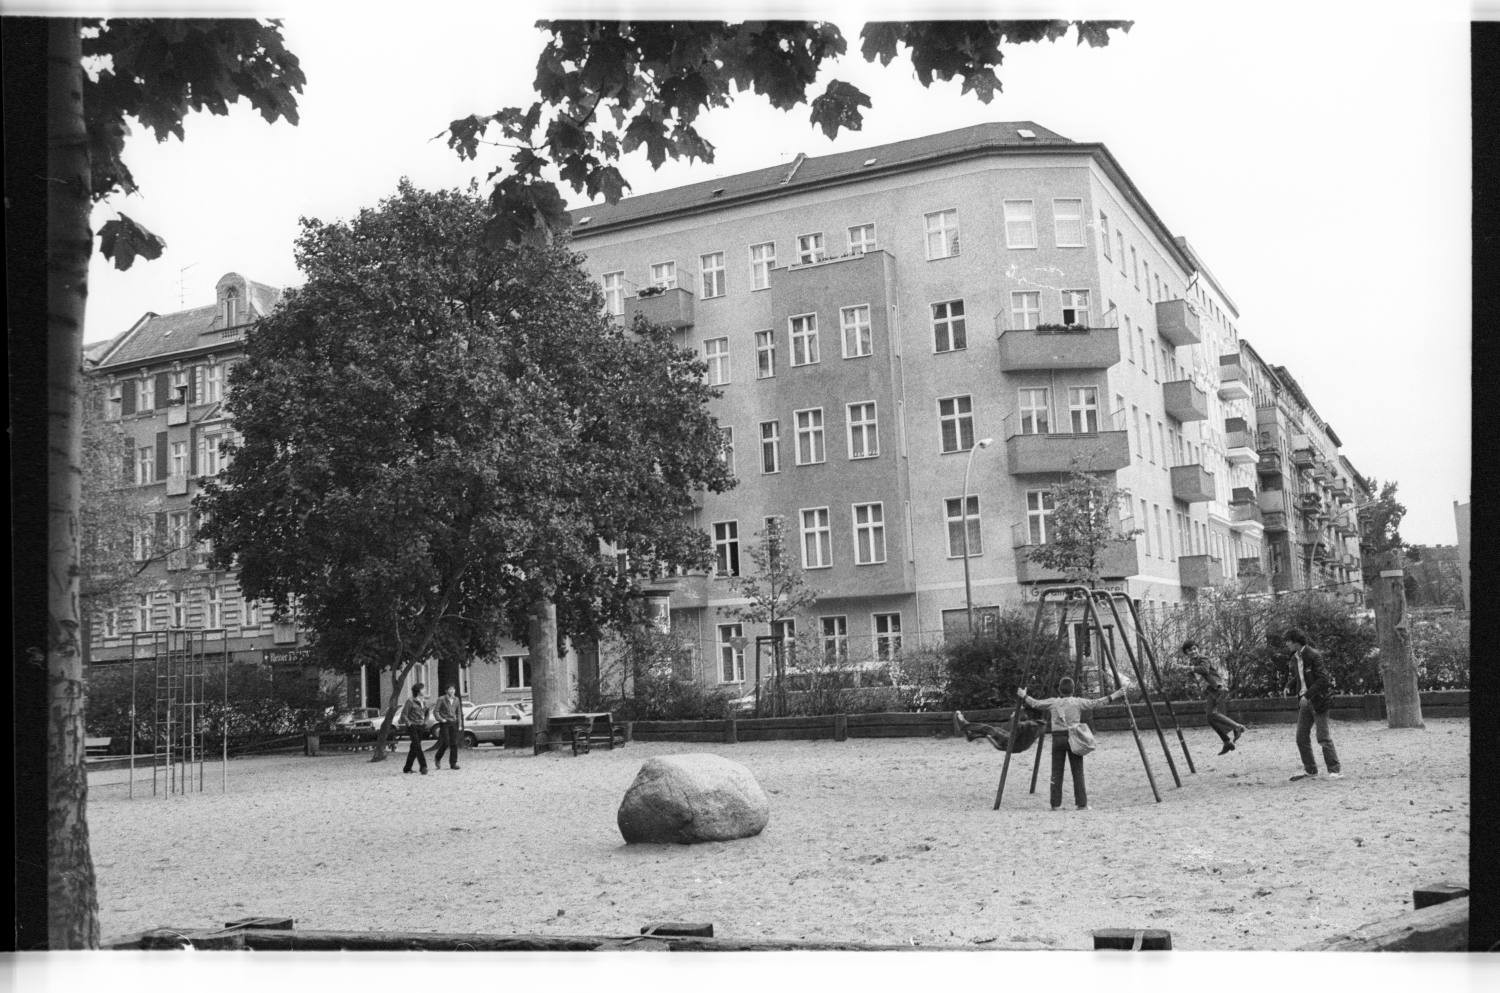 Kleinbildnegative: Spielplatz Merseburger Straße, Apostel-Paulus-Straße, 1981 (Museen Tempelhof-Schöneberg/Jürgen Henschel RR-F)